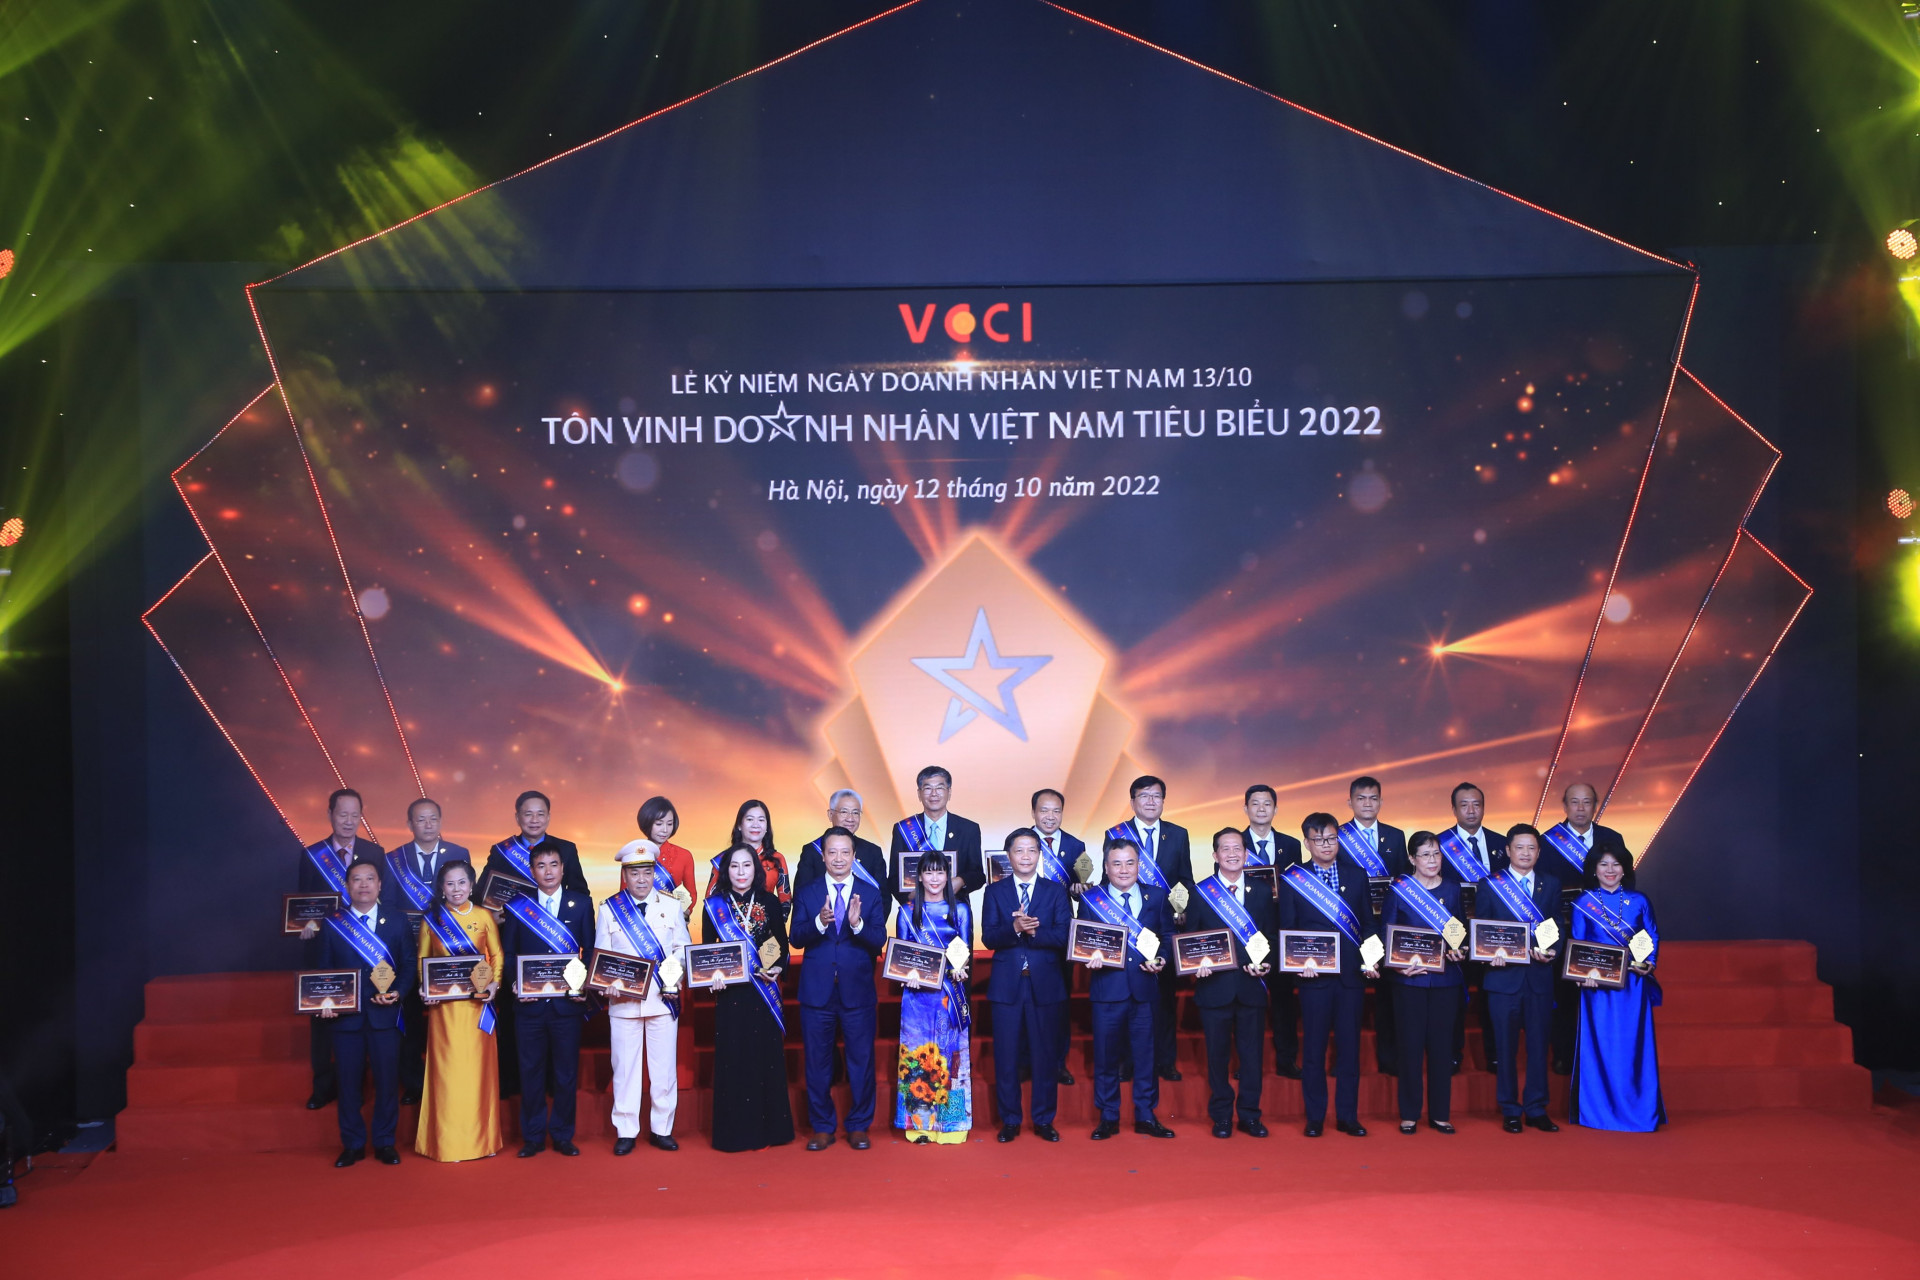 Bà Trịnh Thị Hồng Vân cùng các doanh nhân nhận danh hiệu  "Doanh nhân Việt Nam tiêu biểu "